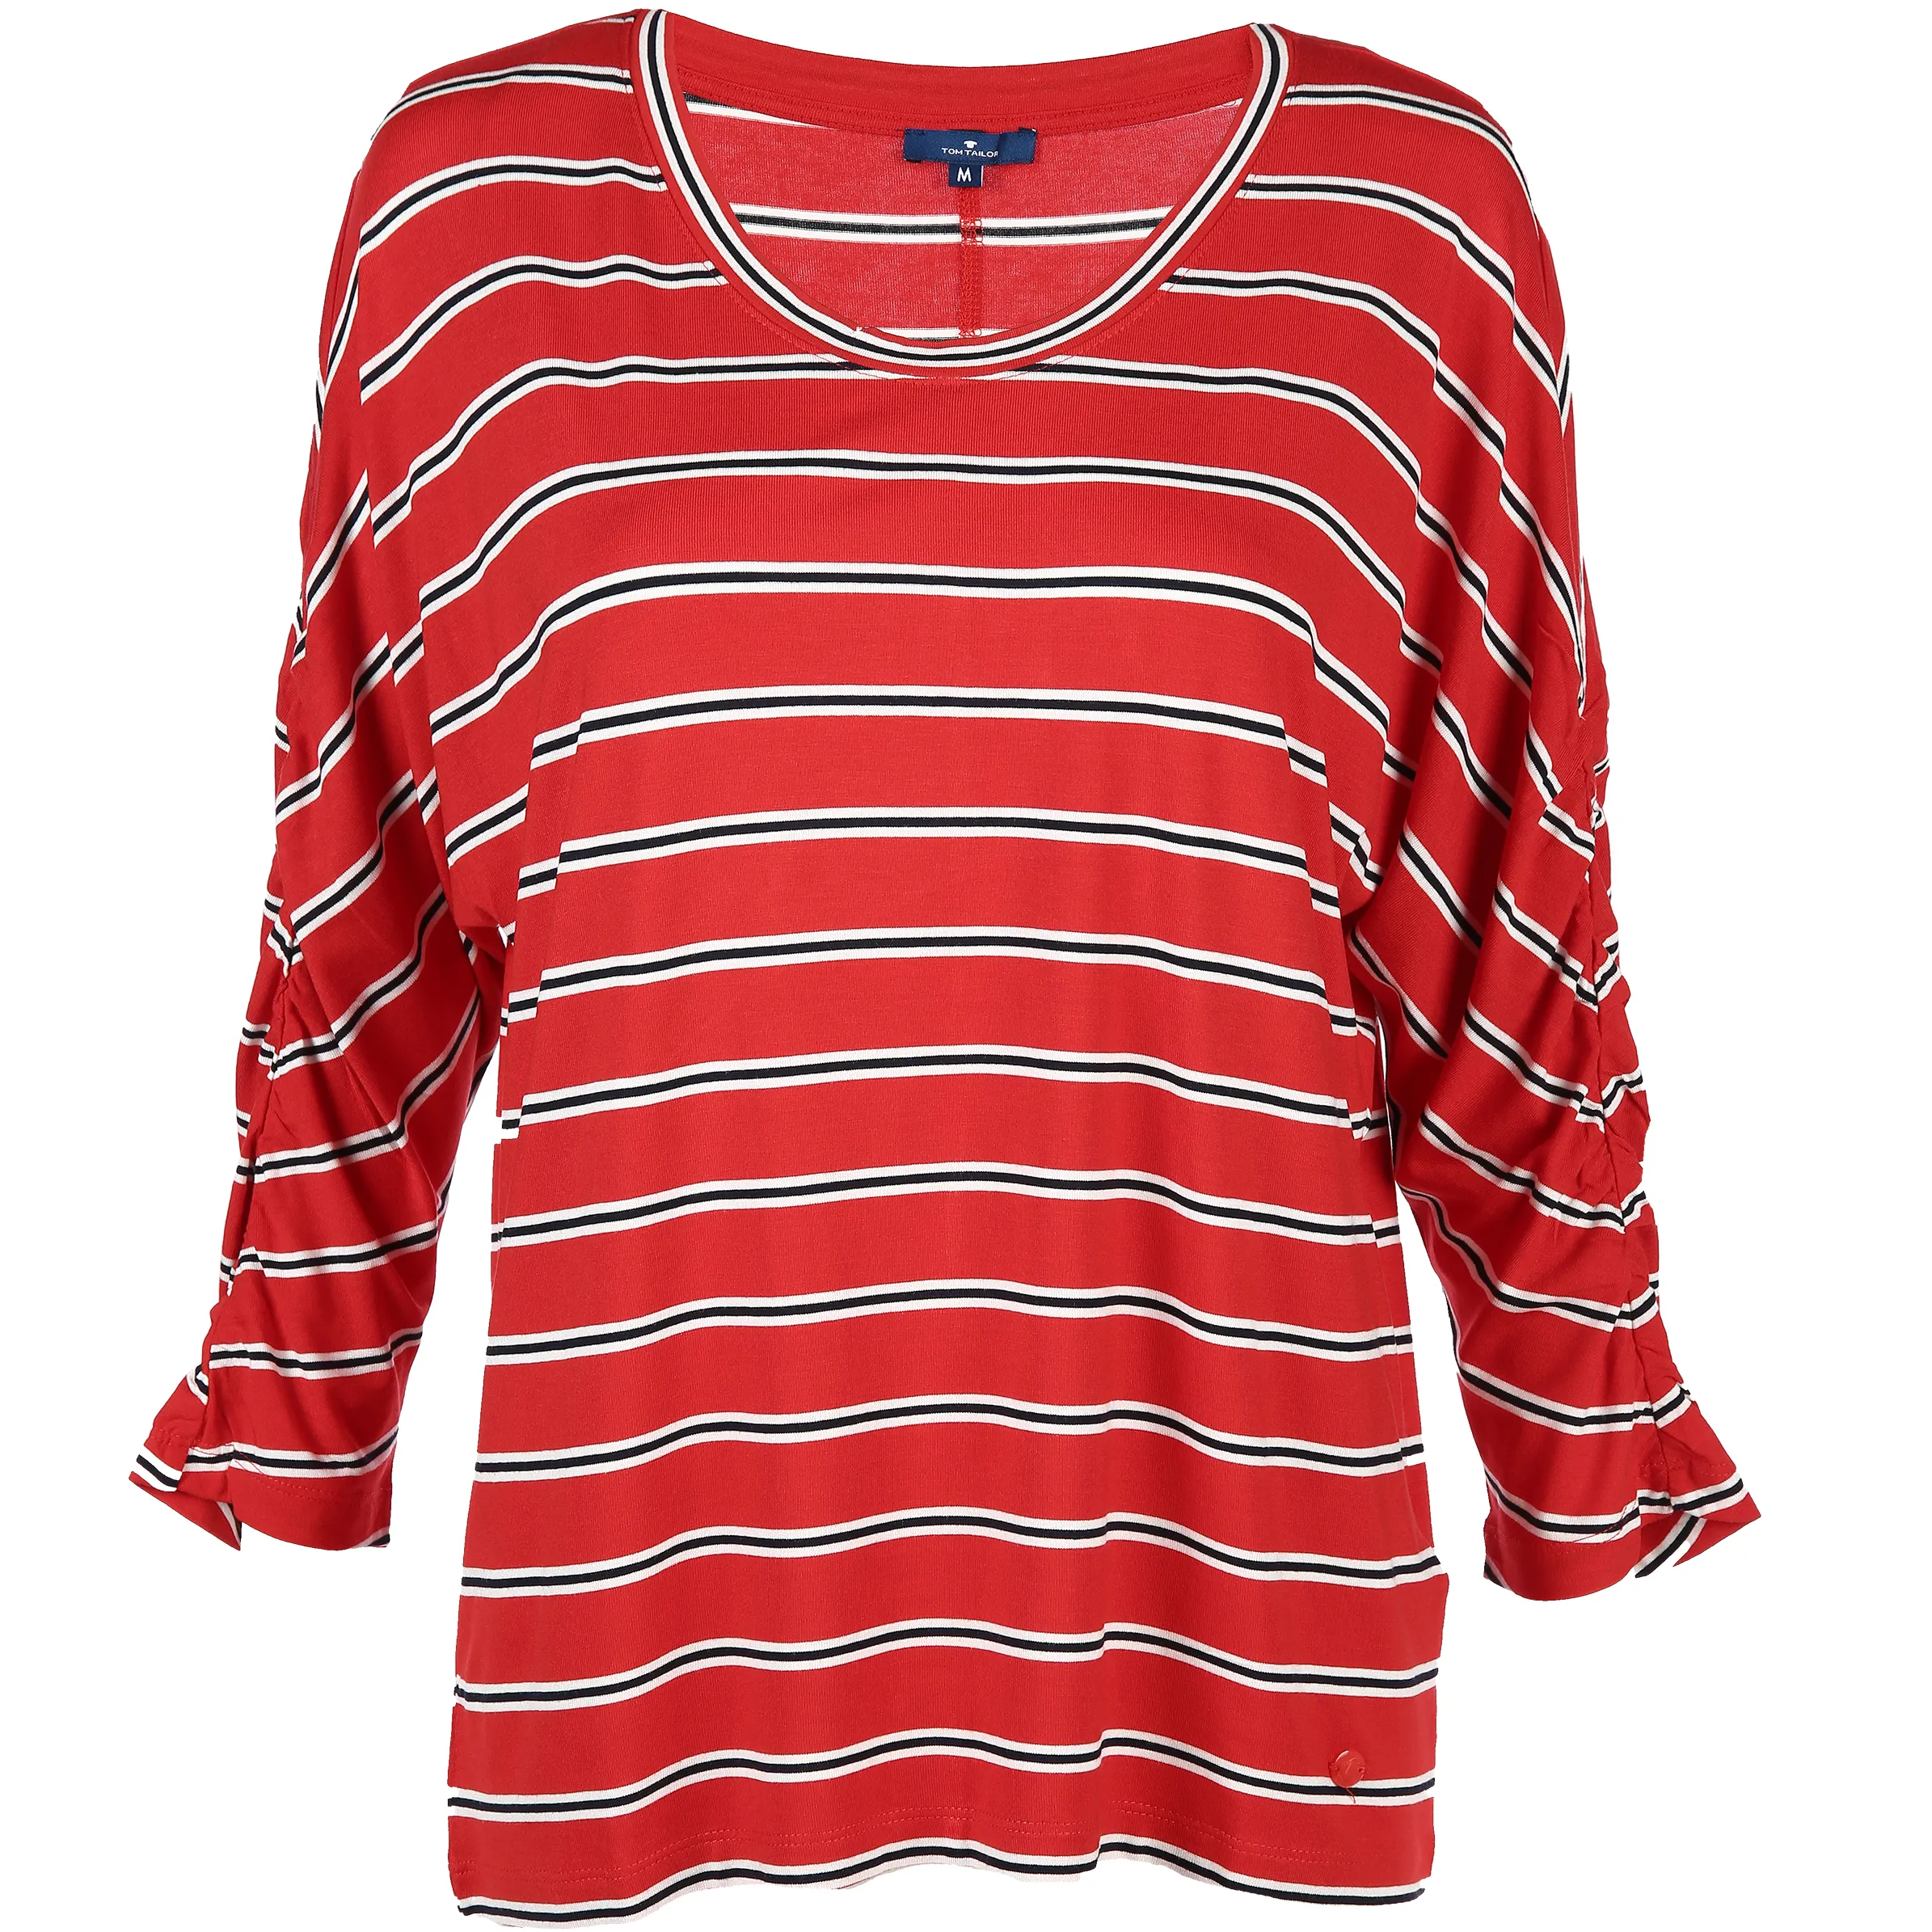 Tom Tailor 1004857 trendy stripe shirt Rot 799677 13406 1